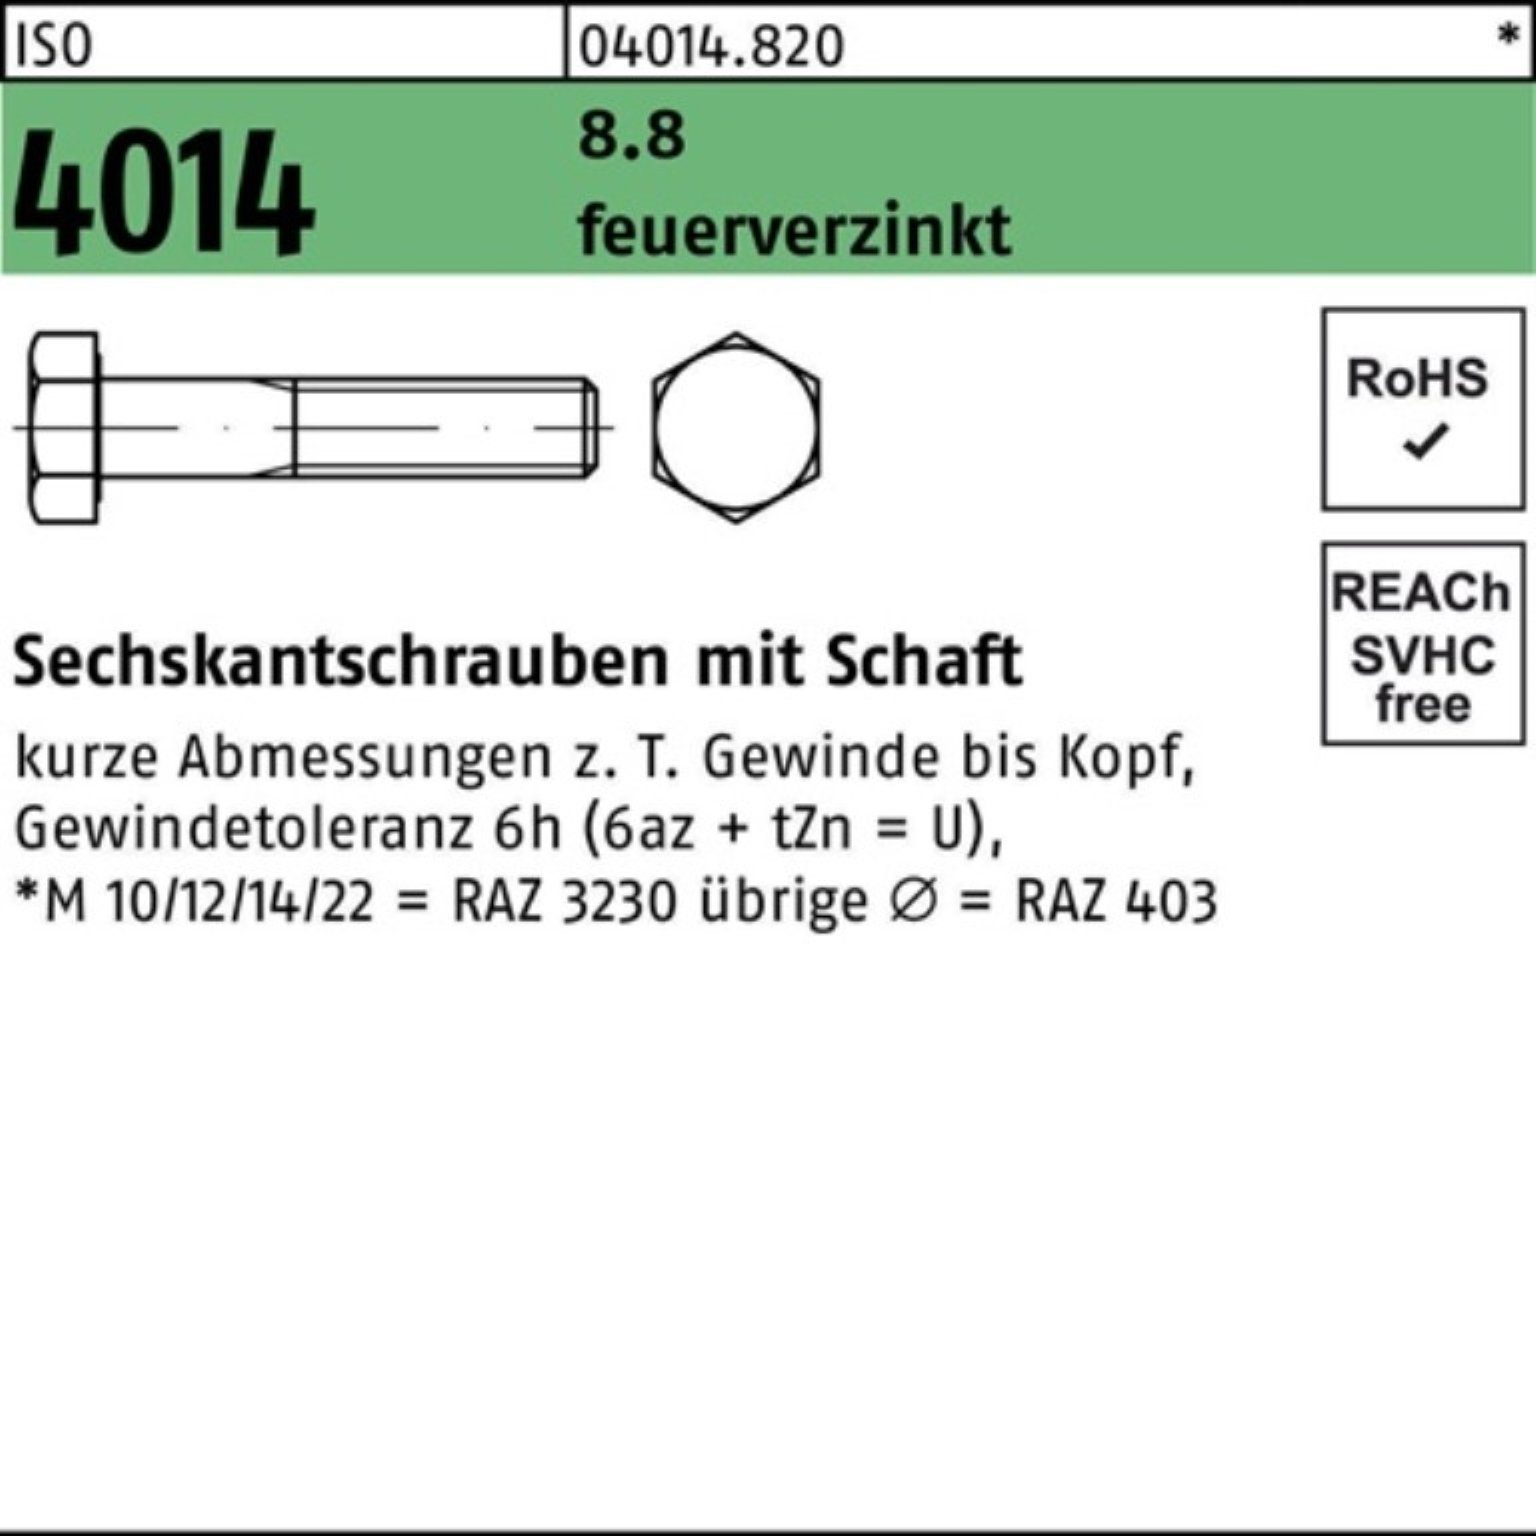 Bufab Sechskantschraube 100er Pack Sechskantschraube 4014 50 M12x feuerverz. 8.8 Schaft ISO 65